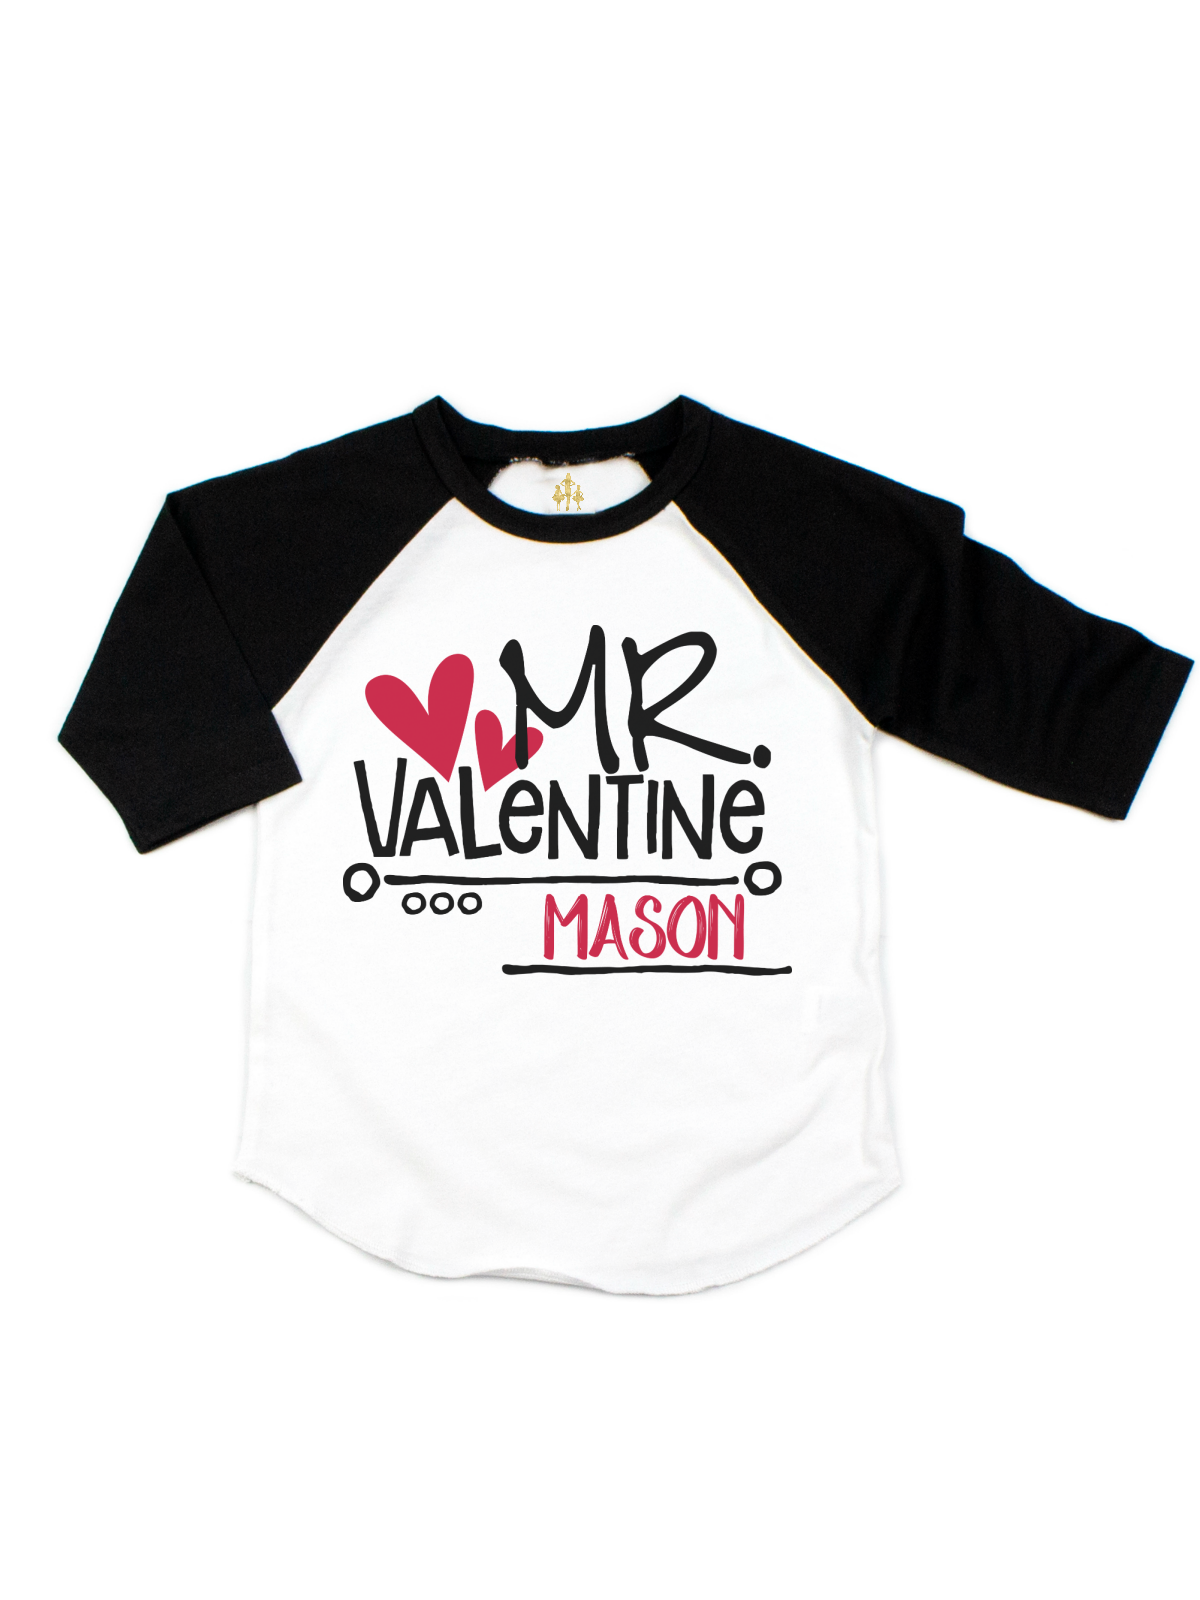 Mr. Valentine Boys Valentine's Day Shirt